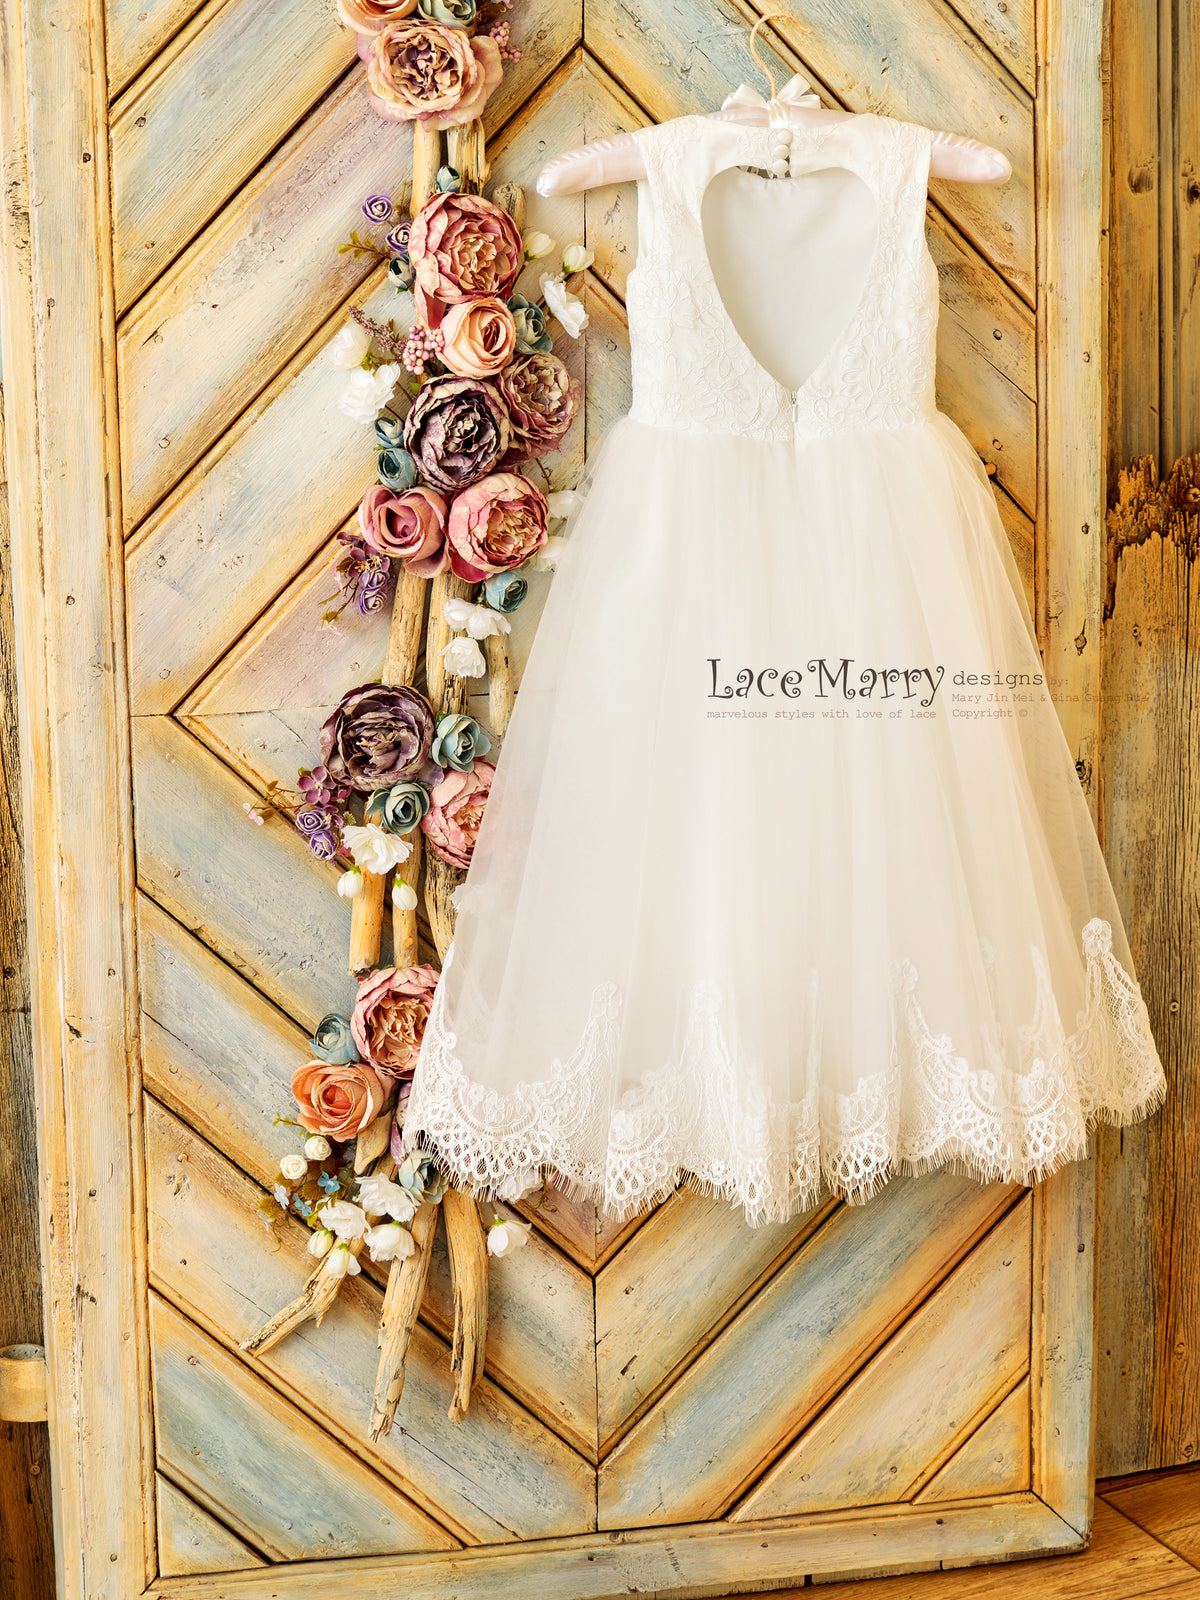  Ivory Long Lace Flower Girl Dresses White Designer